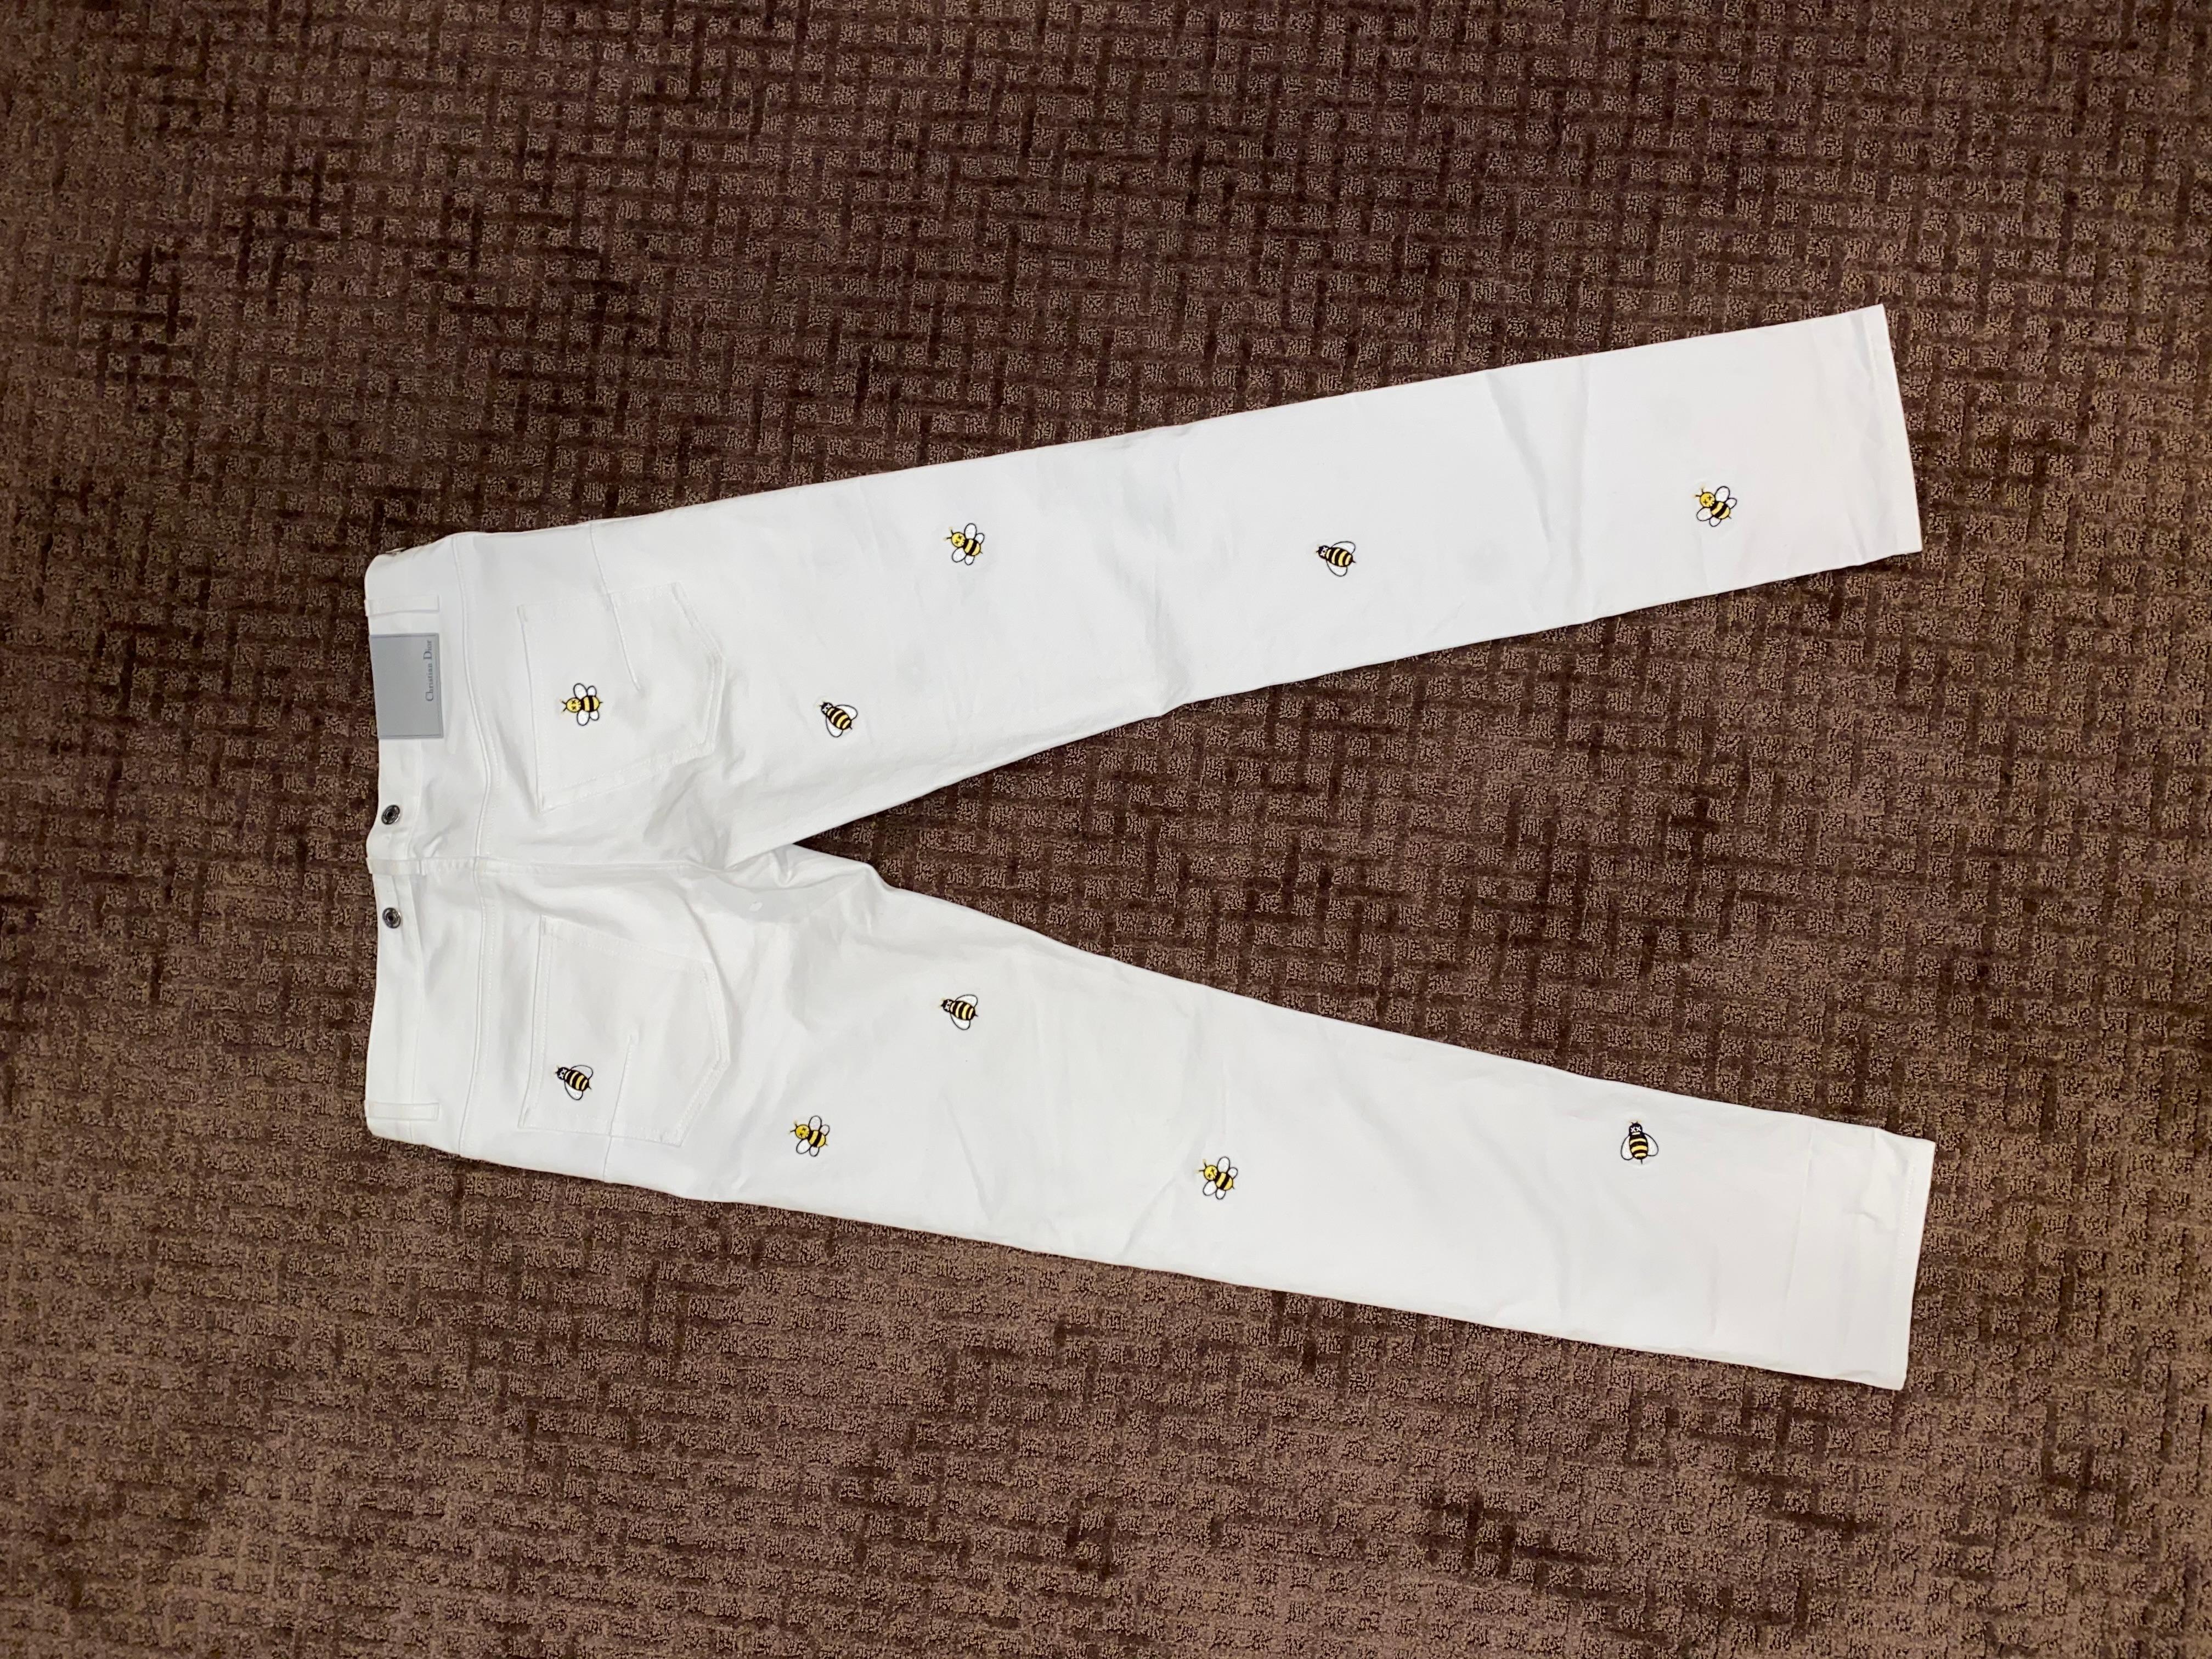 Dior x Kaws Weiße Denim-Hose
Größe 32
Ausgezeichneter Zustand (getragen x1)
Kim Jones erste Kollektion mit dem Künstler kaws

Einzelhandelspreis war $1800+Steuer
Ausverkauft und sehr begehrt. Ich kann das nirgendwo finden. Einziges Paar im